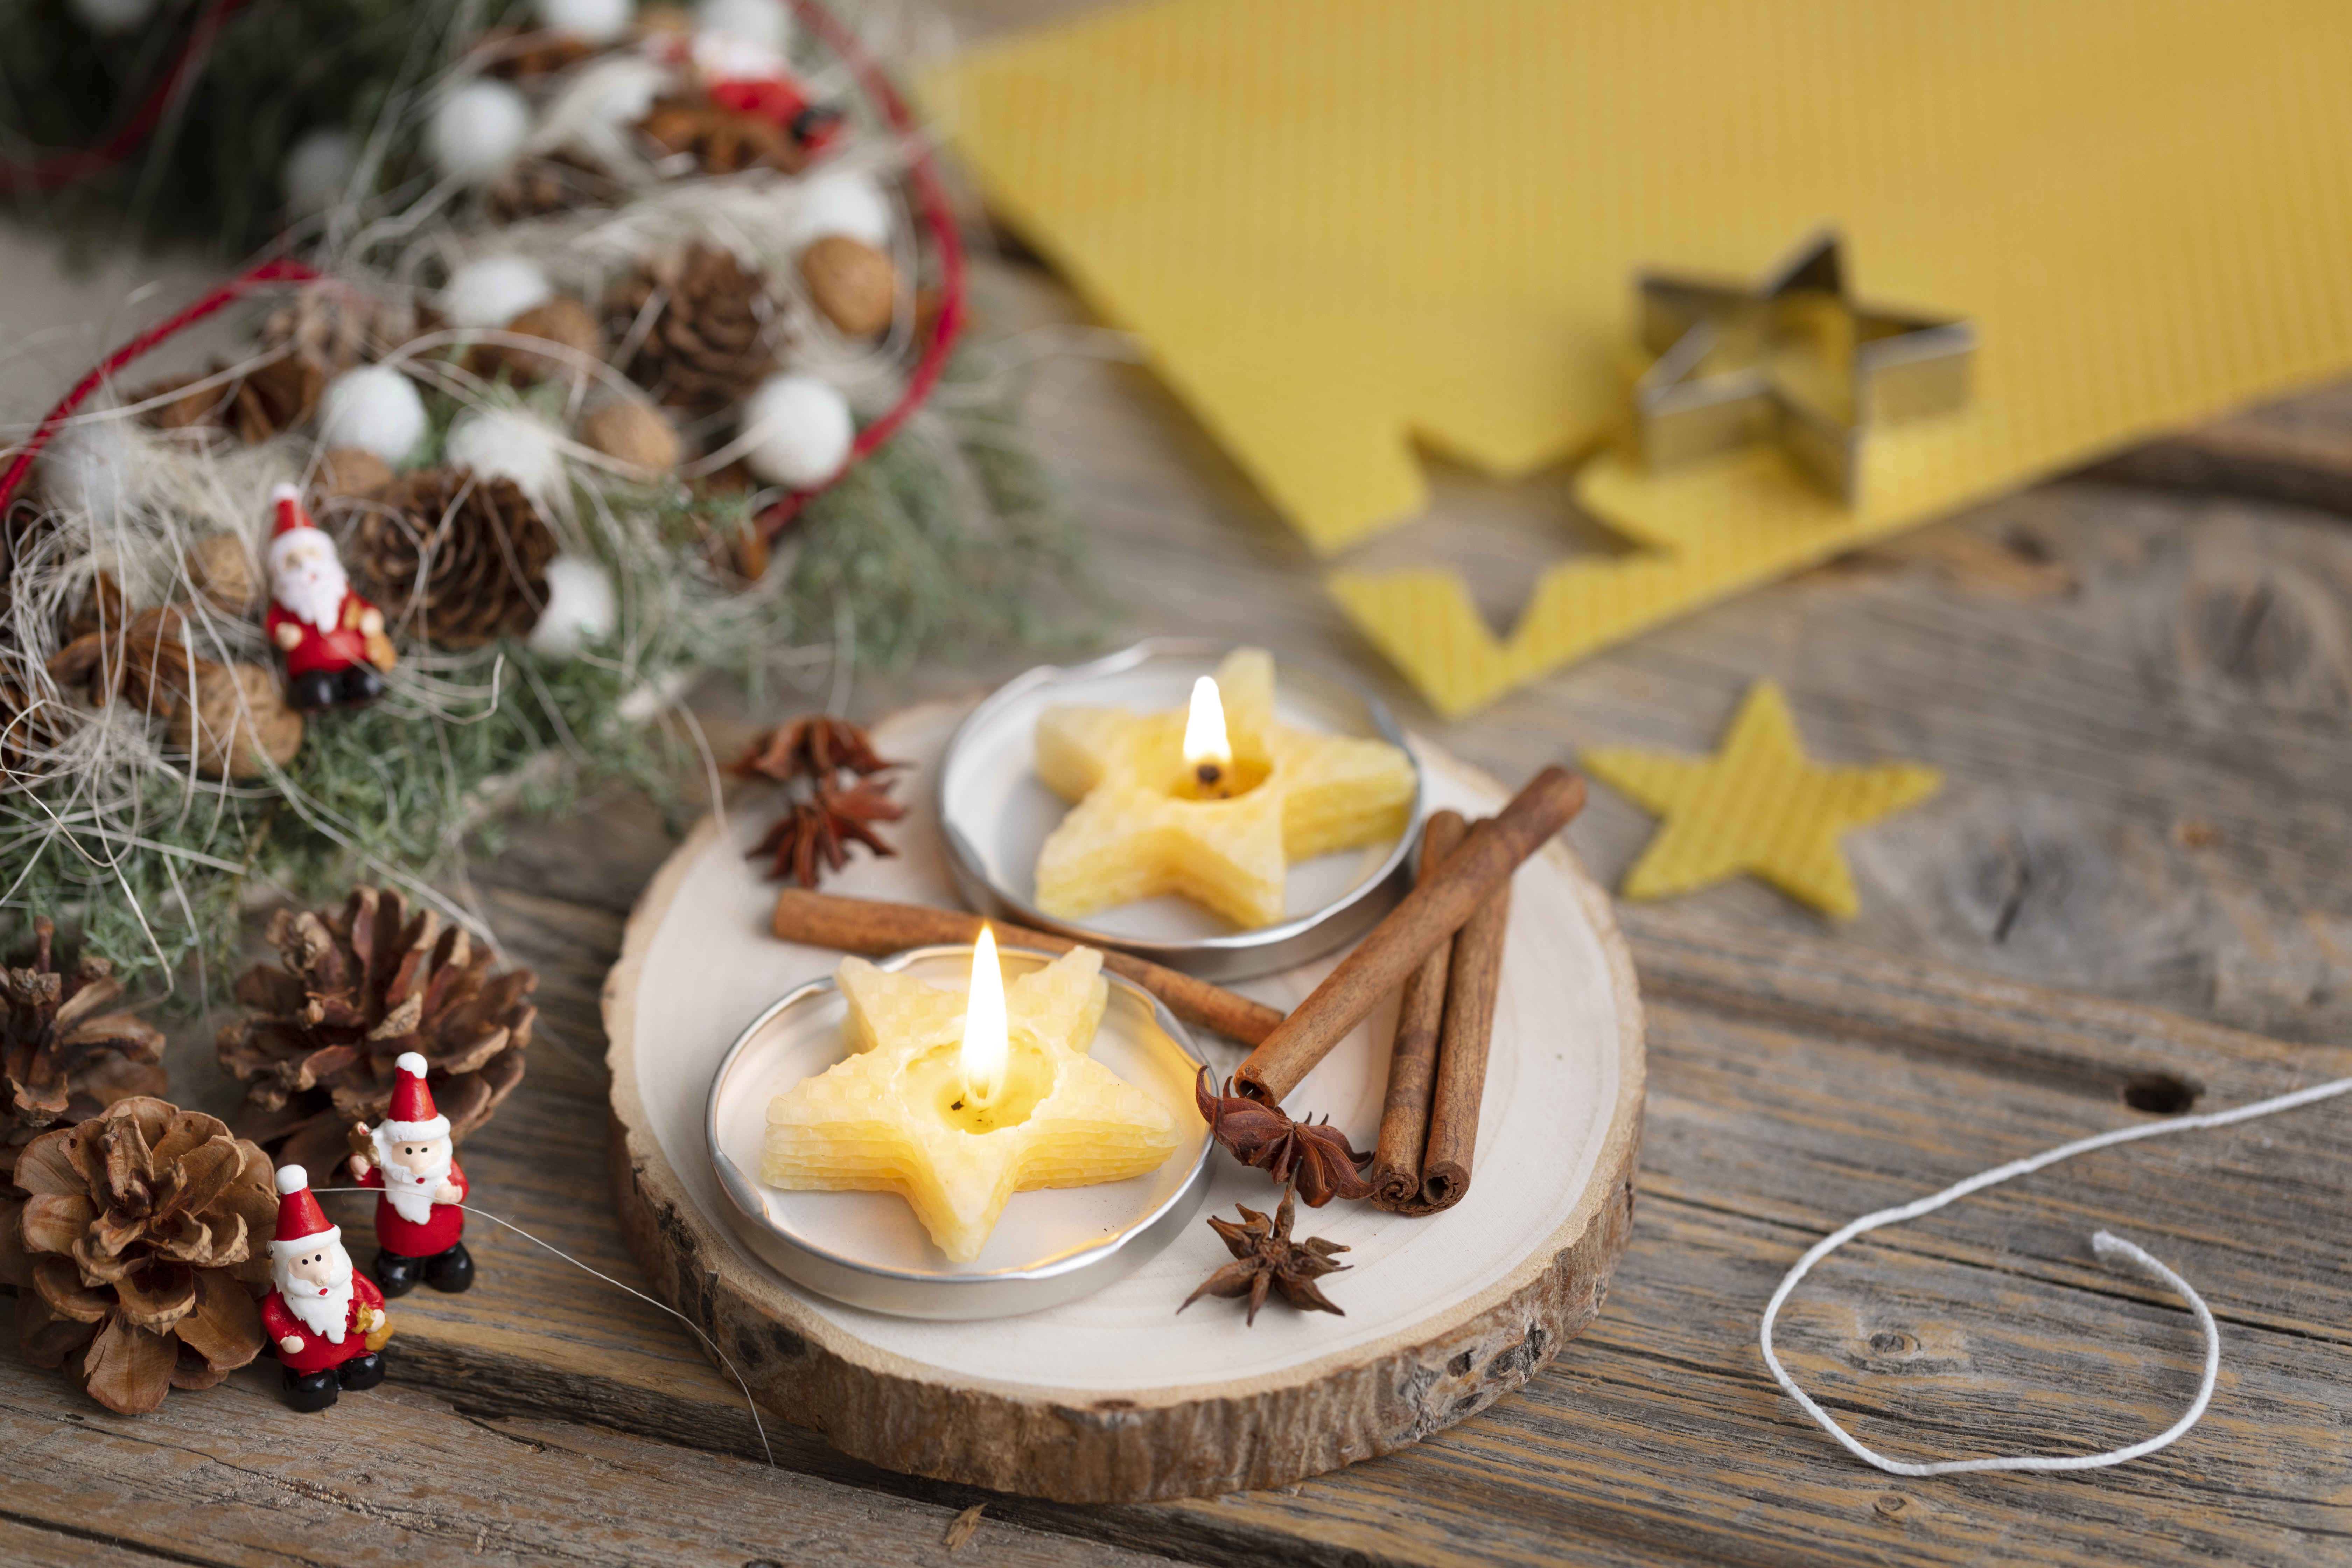 Symmetrie smokkel moord 5 creatieve kerstdecoraties om zelf te maken - CChobby Blog